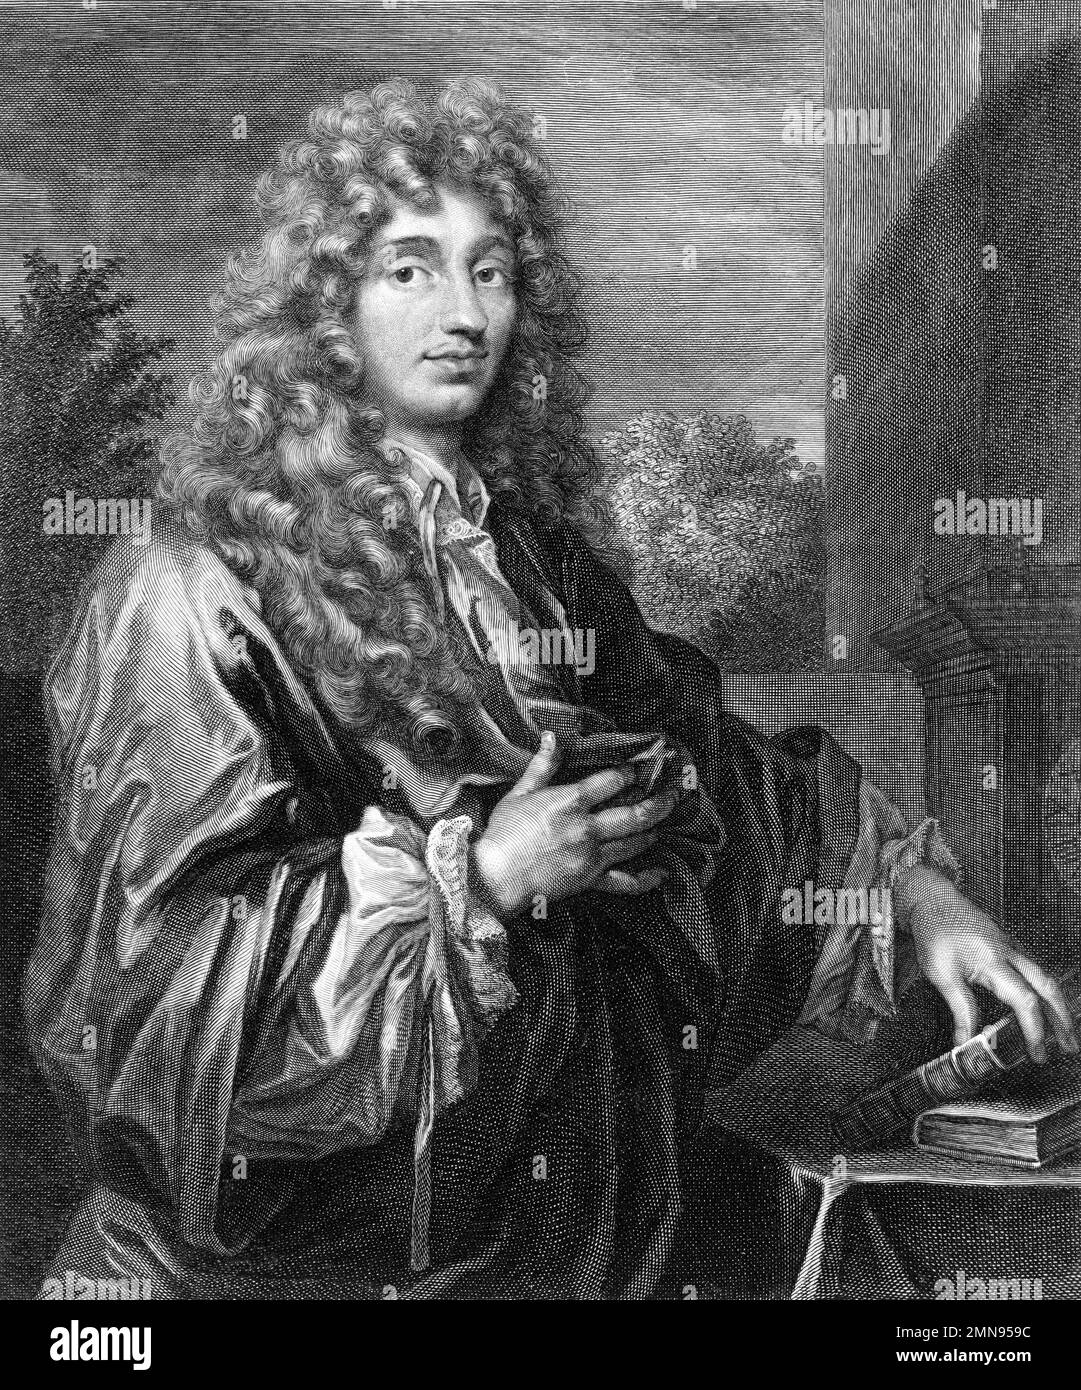 Christiaan Huygens. Ritratto del matematico, fisico e astronomo olandese Christiaan Huygens (1629-1695), incisione, c. 1687/8 Foto Stock